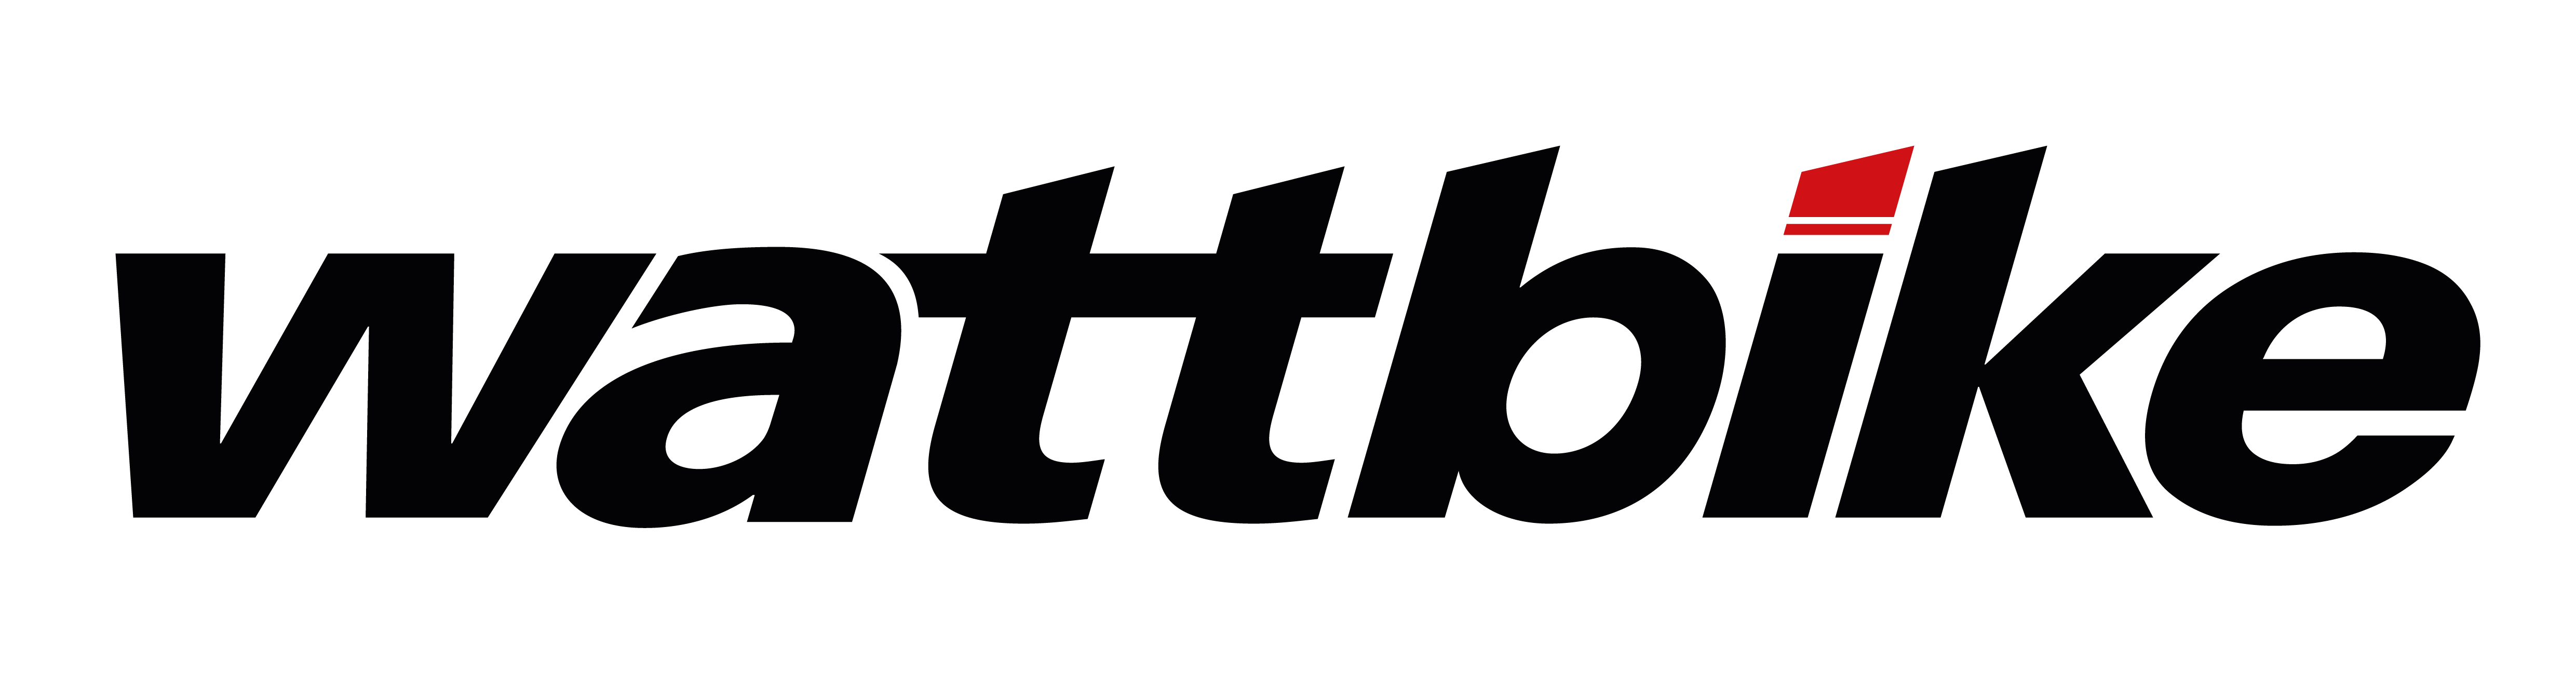 Wattbike-logo-5